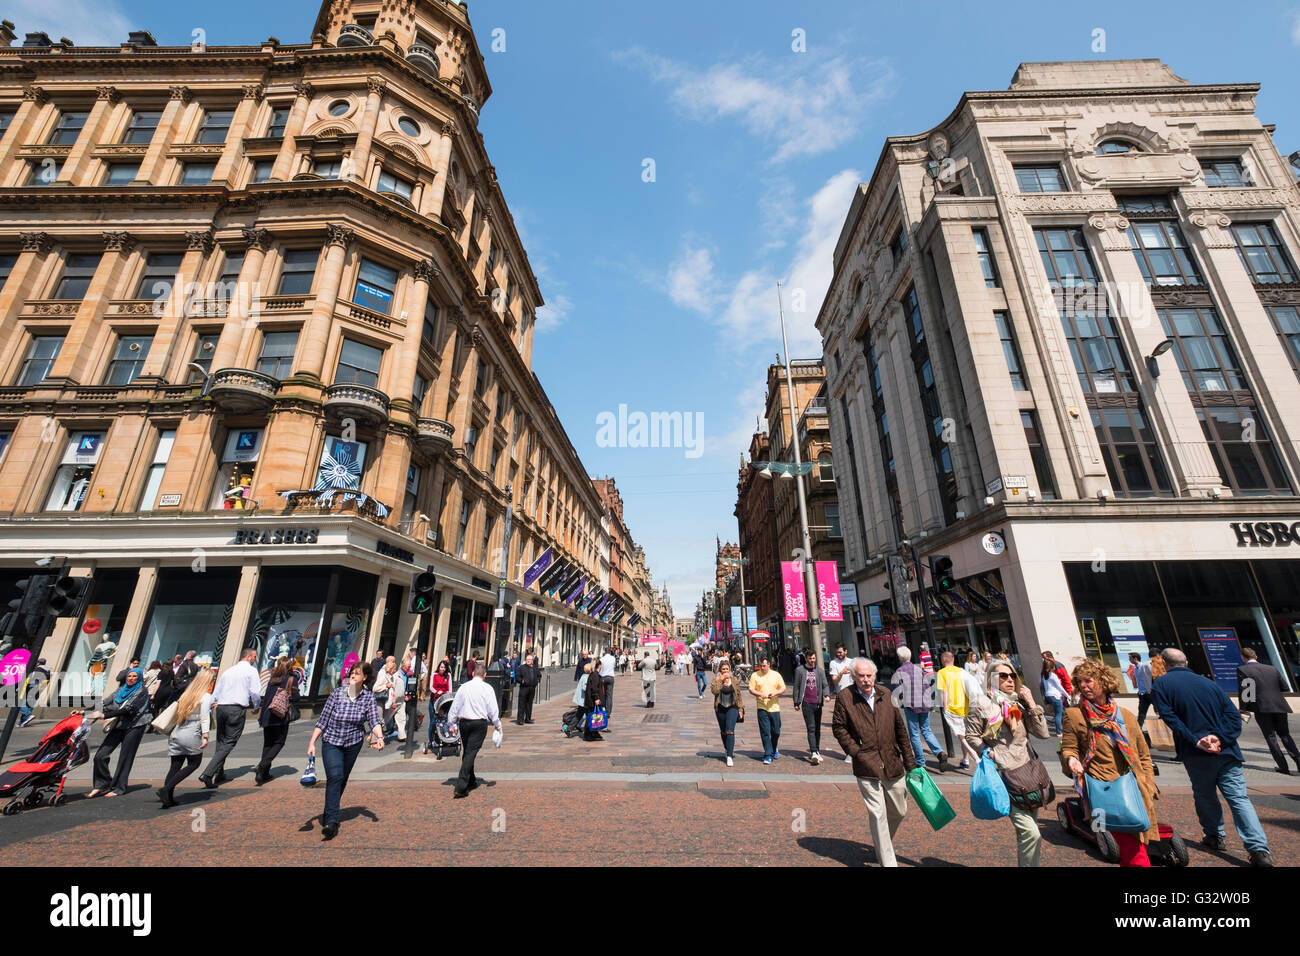 Vista de edificios históricos en Buchanan Street, la popular calle de tiendas, en el centro de Glasgow, Reino Unido Foto de stock